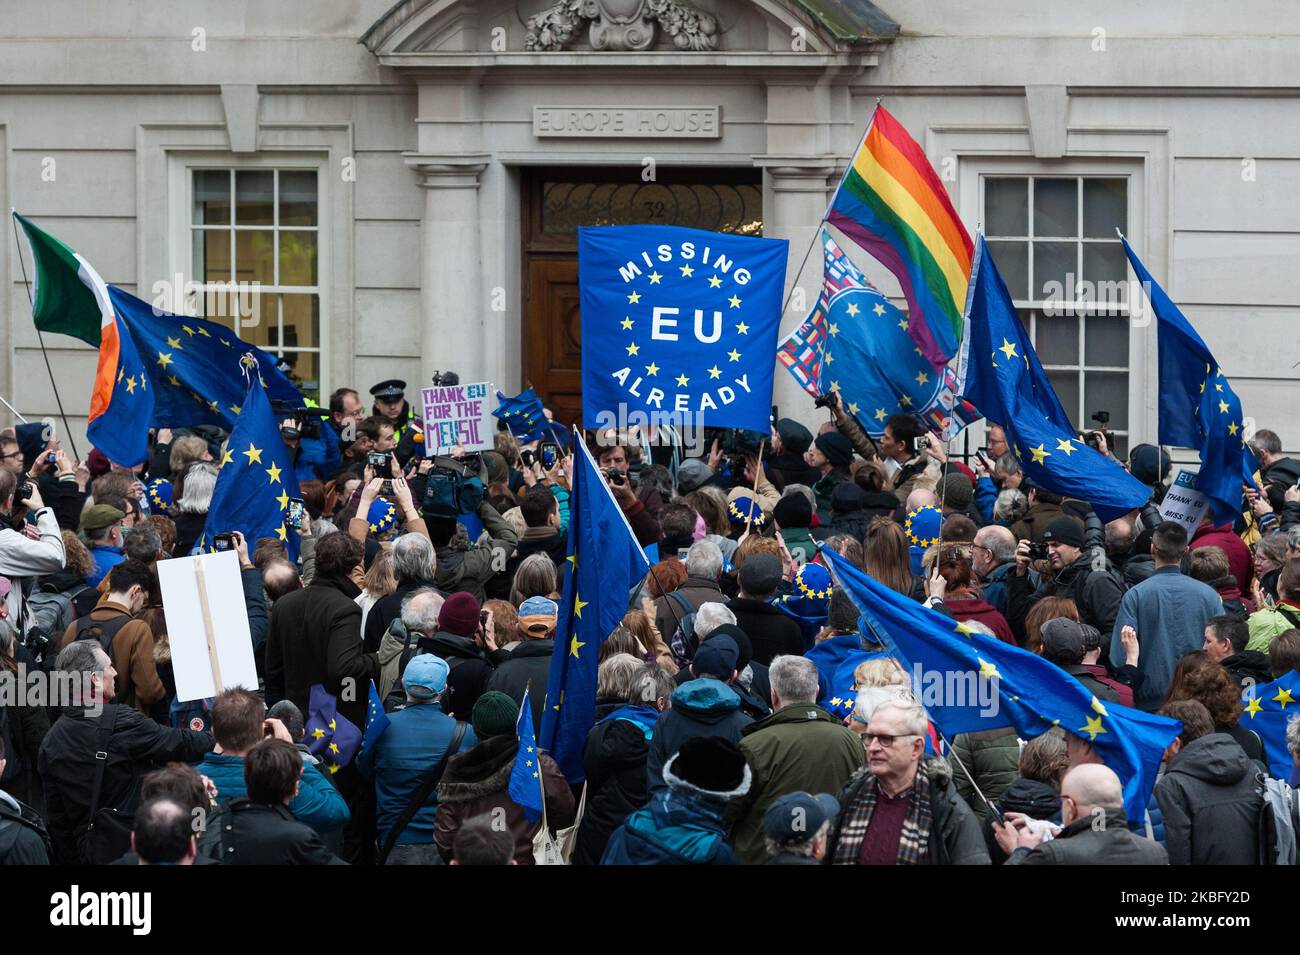 Eine Gruppe pro-EU-Befürworter demonstrieren vor dem Europahaus, um am 31. Januar 2020 in London, England, das Ende der EU-Mitgliedschaft Großbritanniens zu markieren. Heute wird Großbritannien die Europäische Union nach 47 Jahren Mitgliedschaft offiziell um 11 Uhr verlassen und in eine 11-monatige Übergangsphase eintreten, in der das künftige Handelsabkommen ausgehandelt wird. (Foto von Wiktor Szymanowicz/NurPhoto) Stockfoto